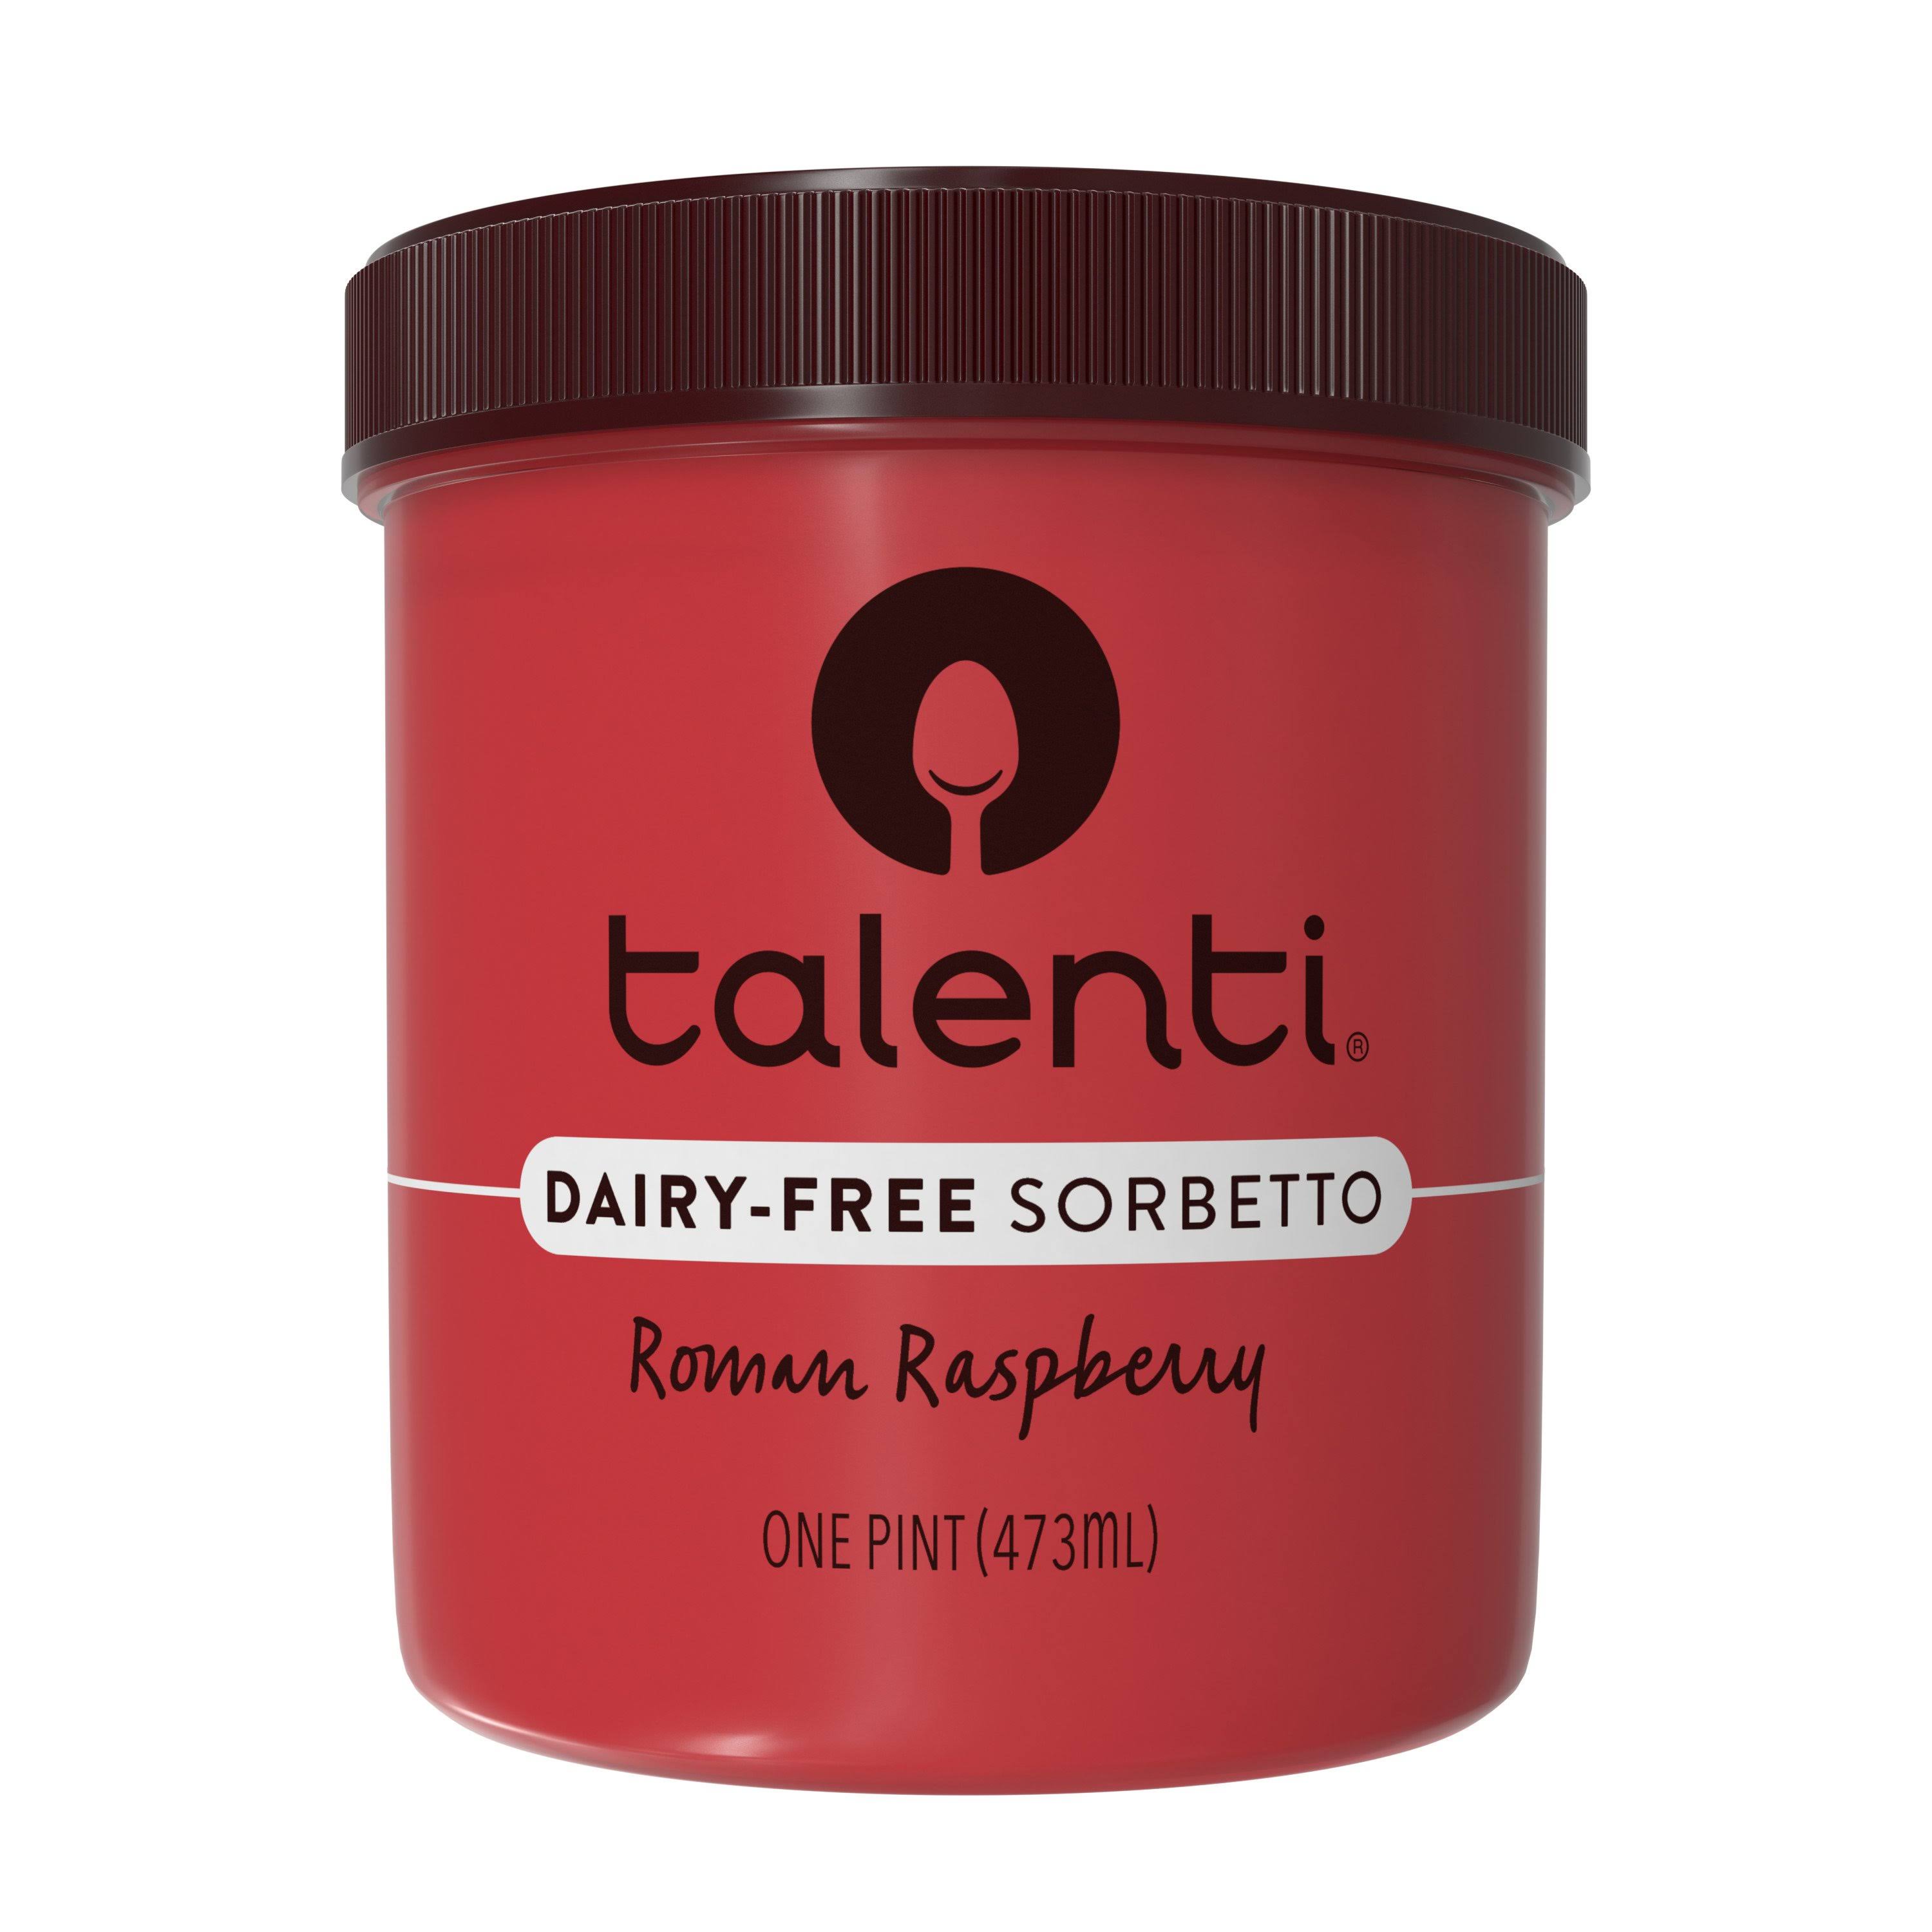 Talenti Sorbetto Ice Cream - Roman Raspberry, 1pt